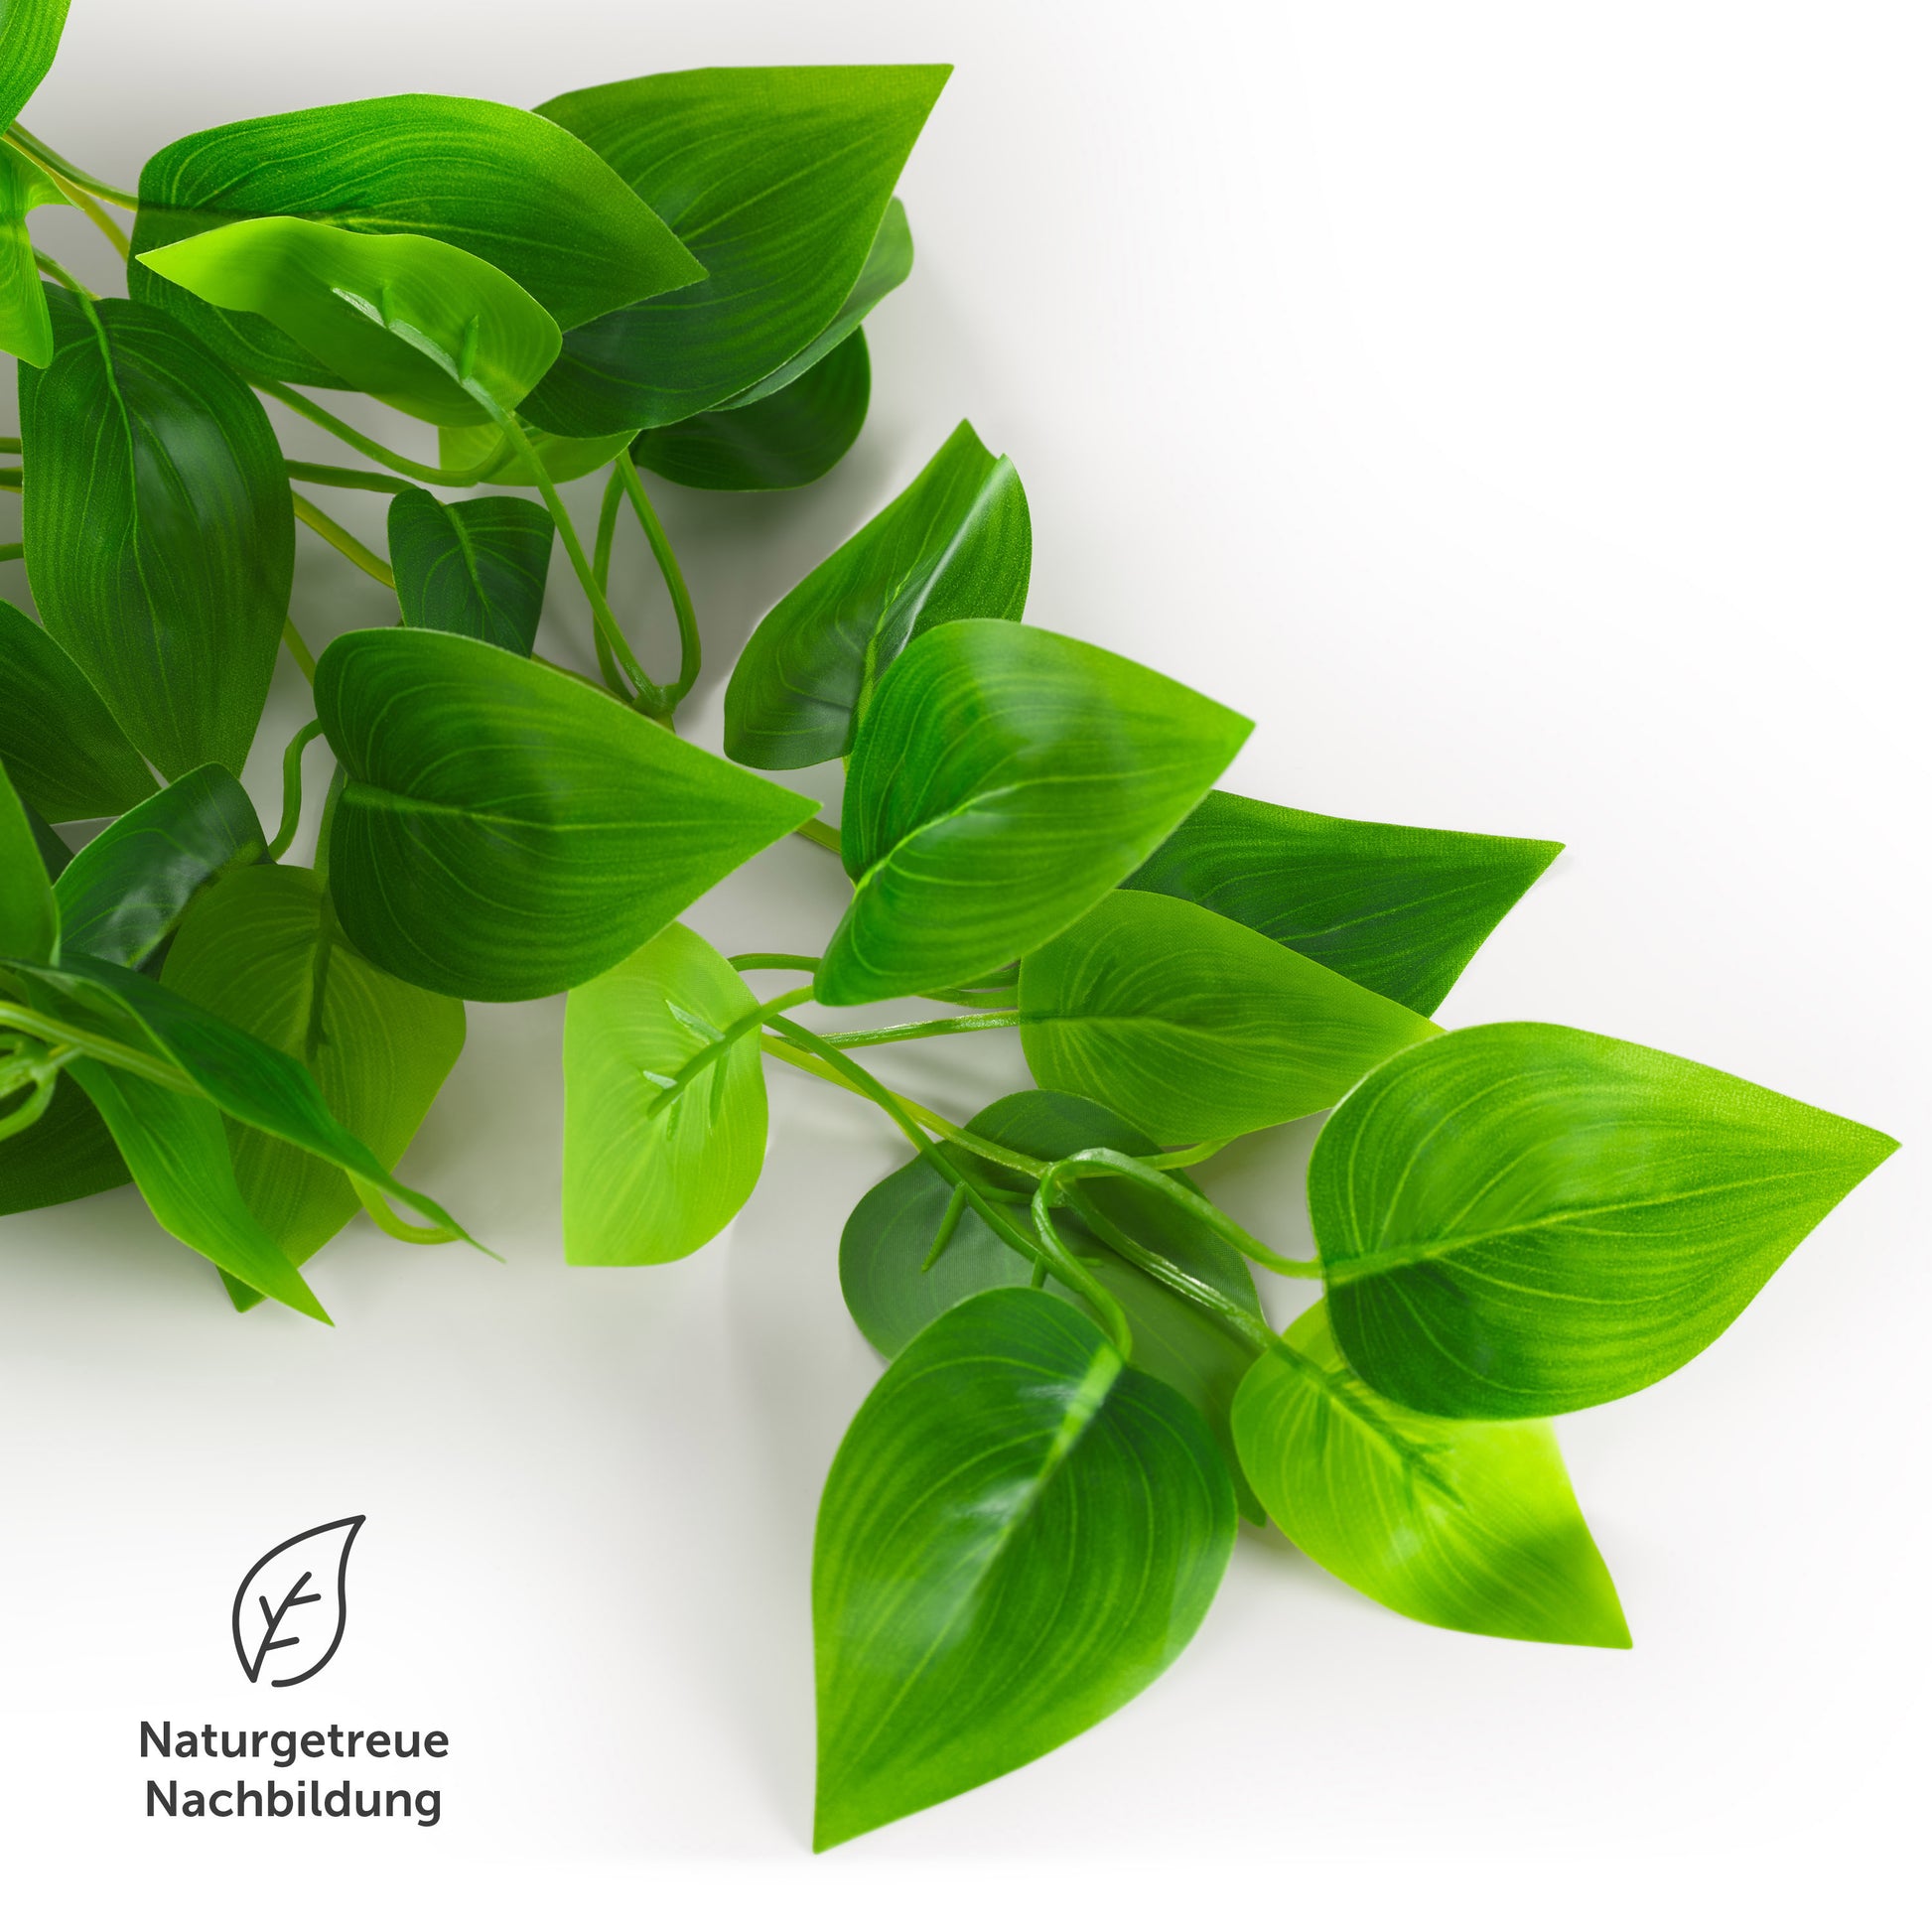 Nahaufnahme von grünen Kunstblättern einer Pflanze mit der Bezeichnung "Naturgetreue Nachbildung" auf weißem Hintergrund.